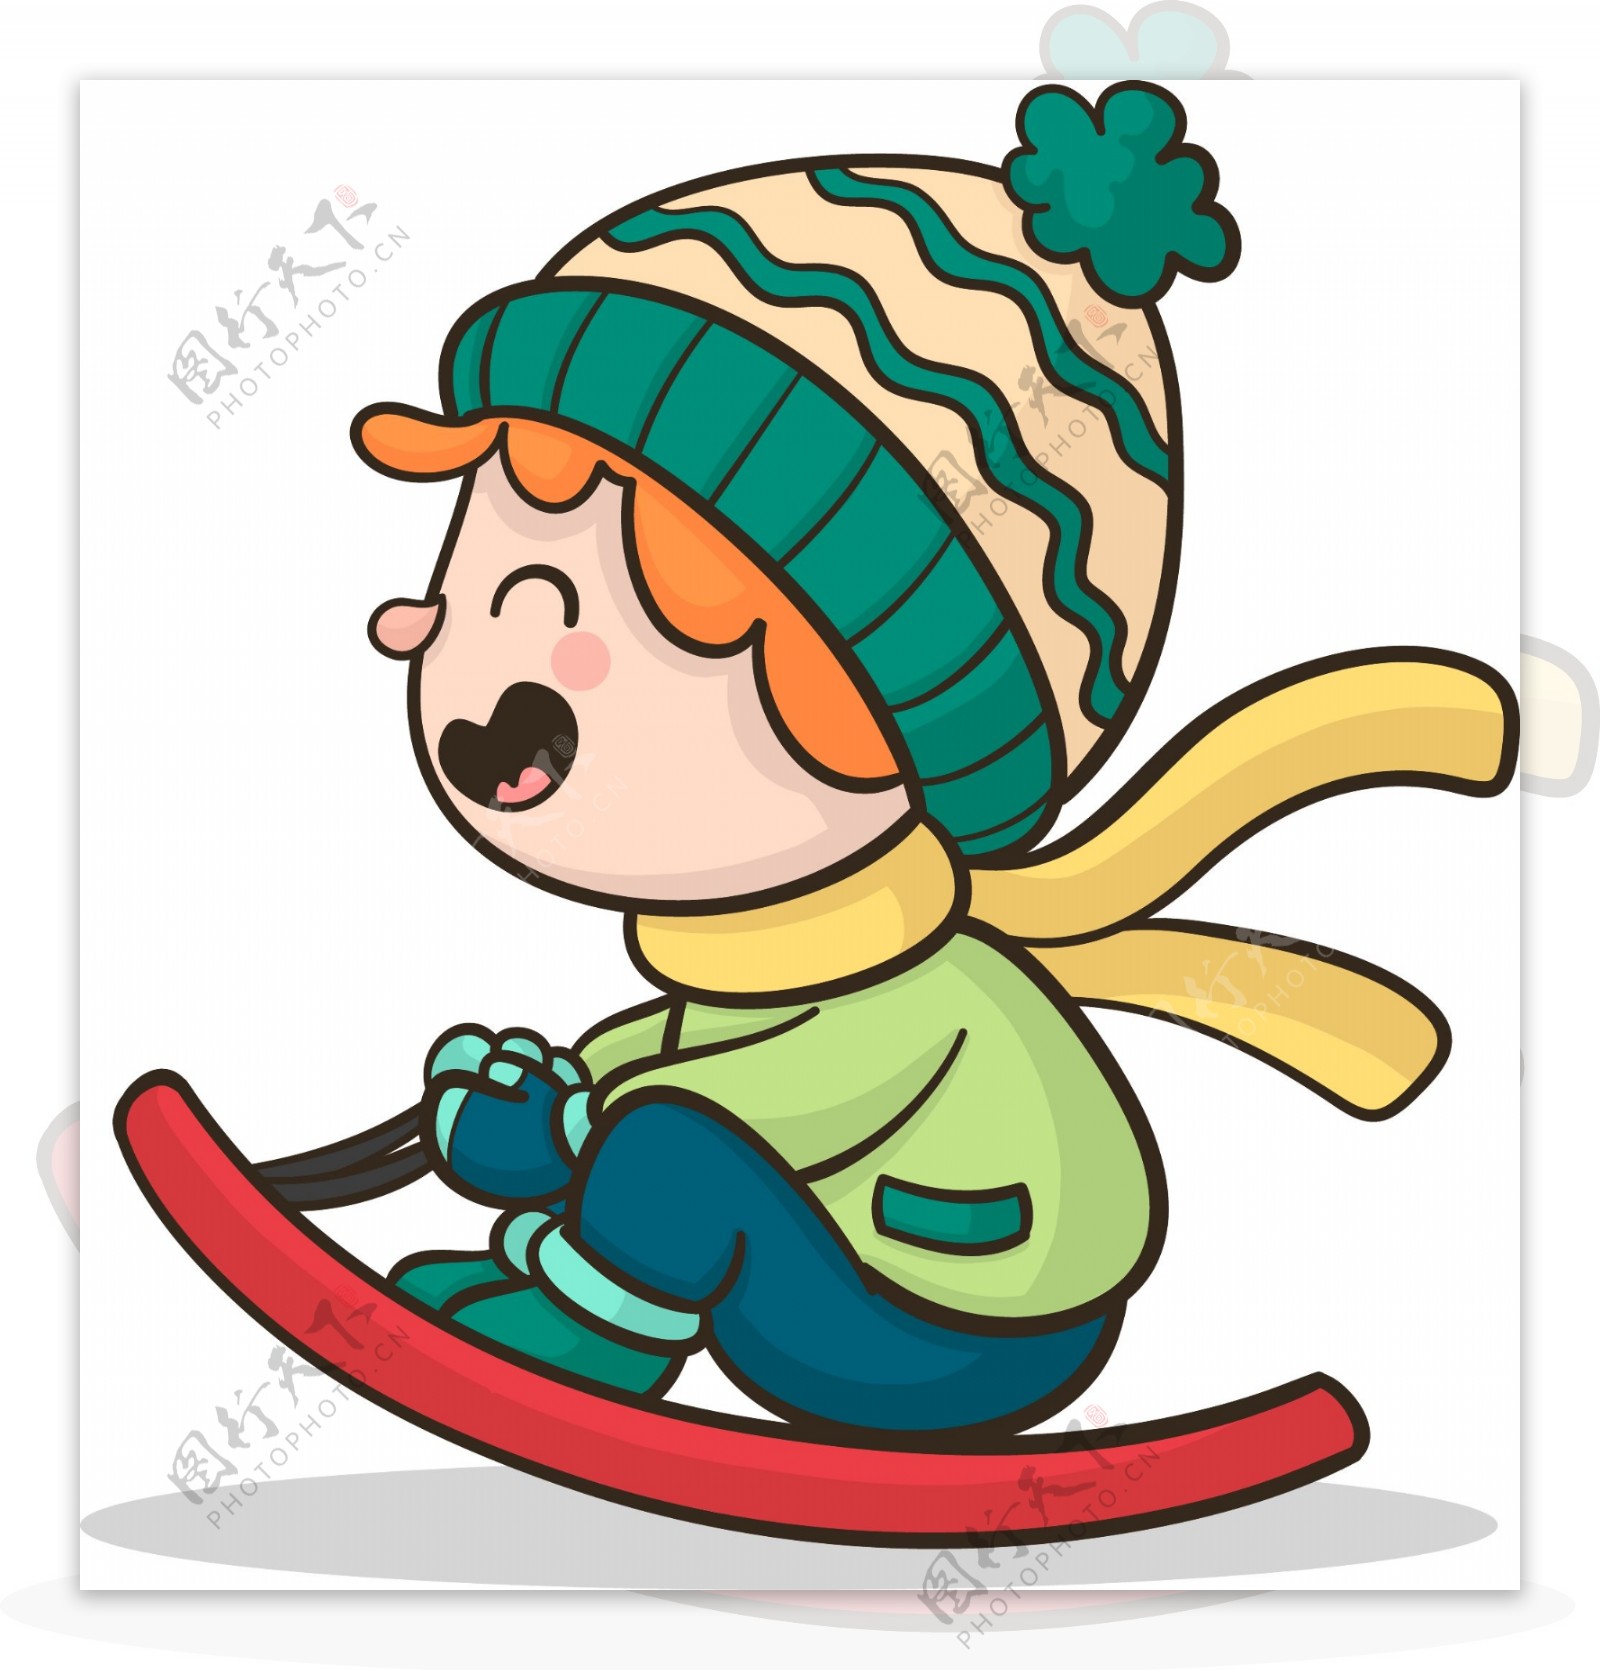 坐着滑板滑雪的男孩原创元素